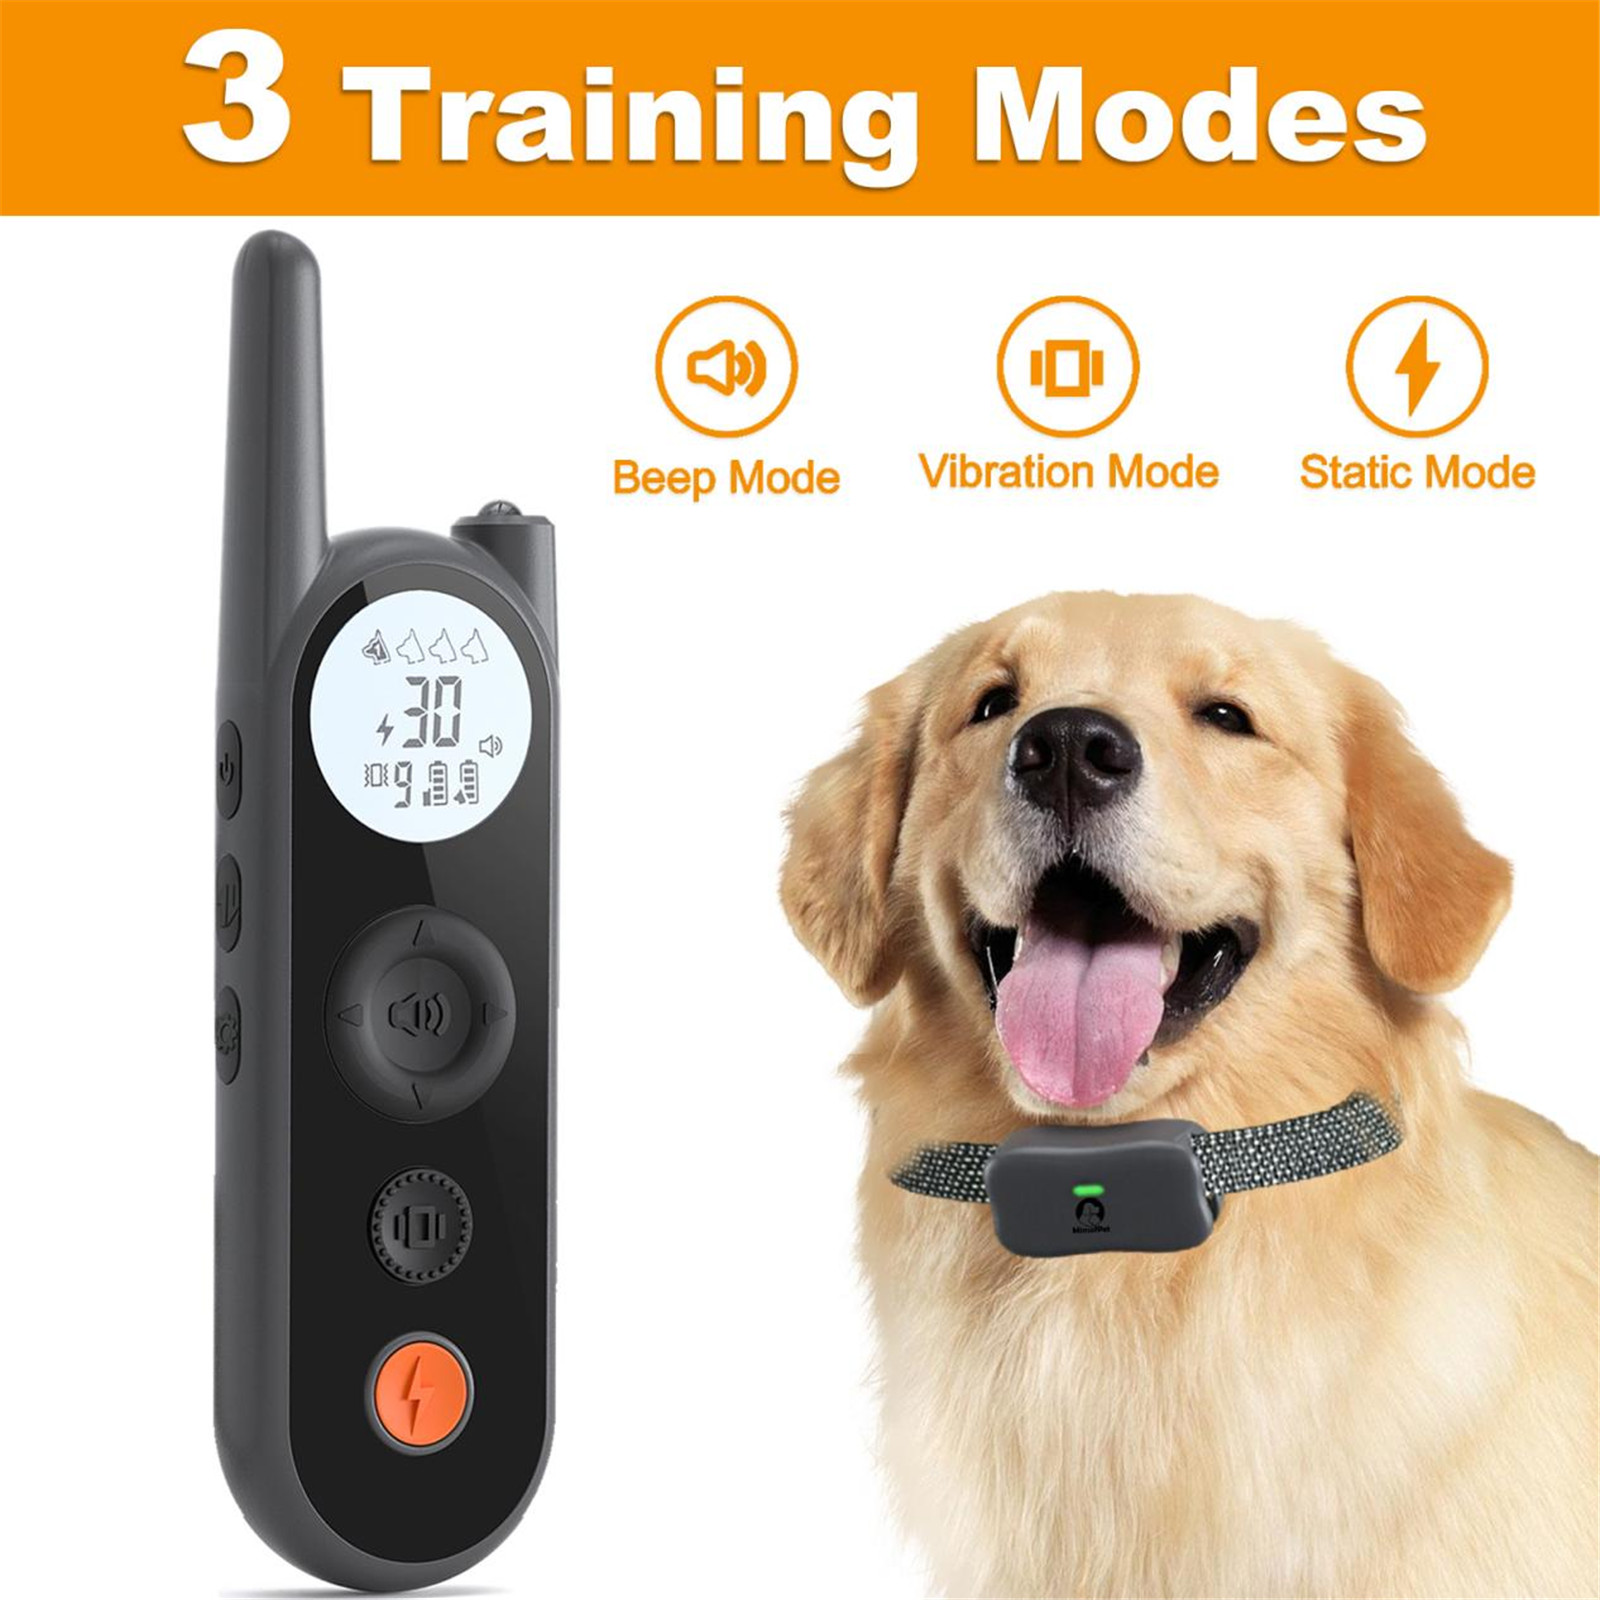 Introducción sobre el collar de adiestramiento para perros modelo Mimofpet X201 (11)